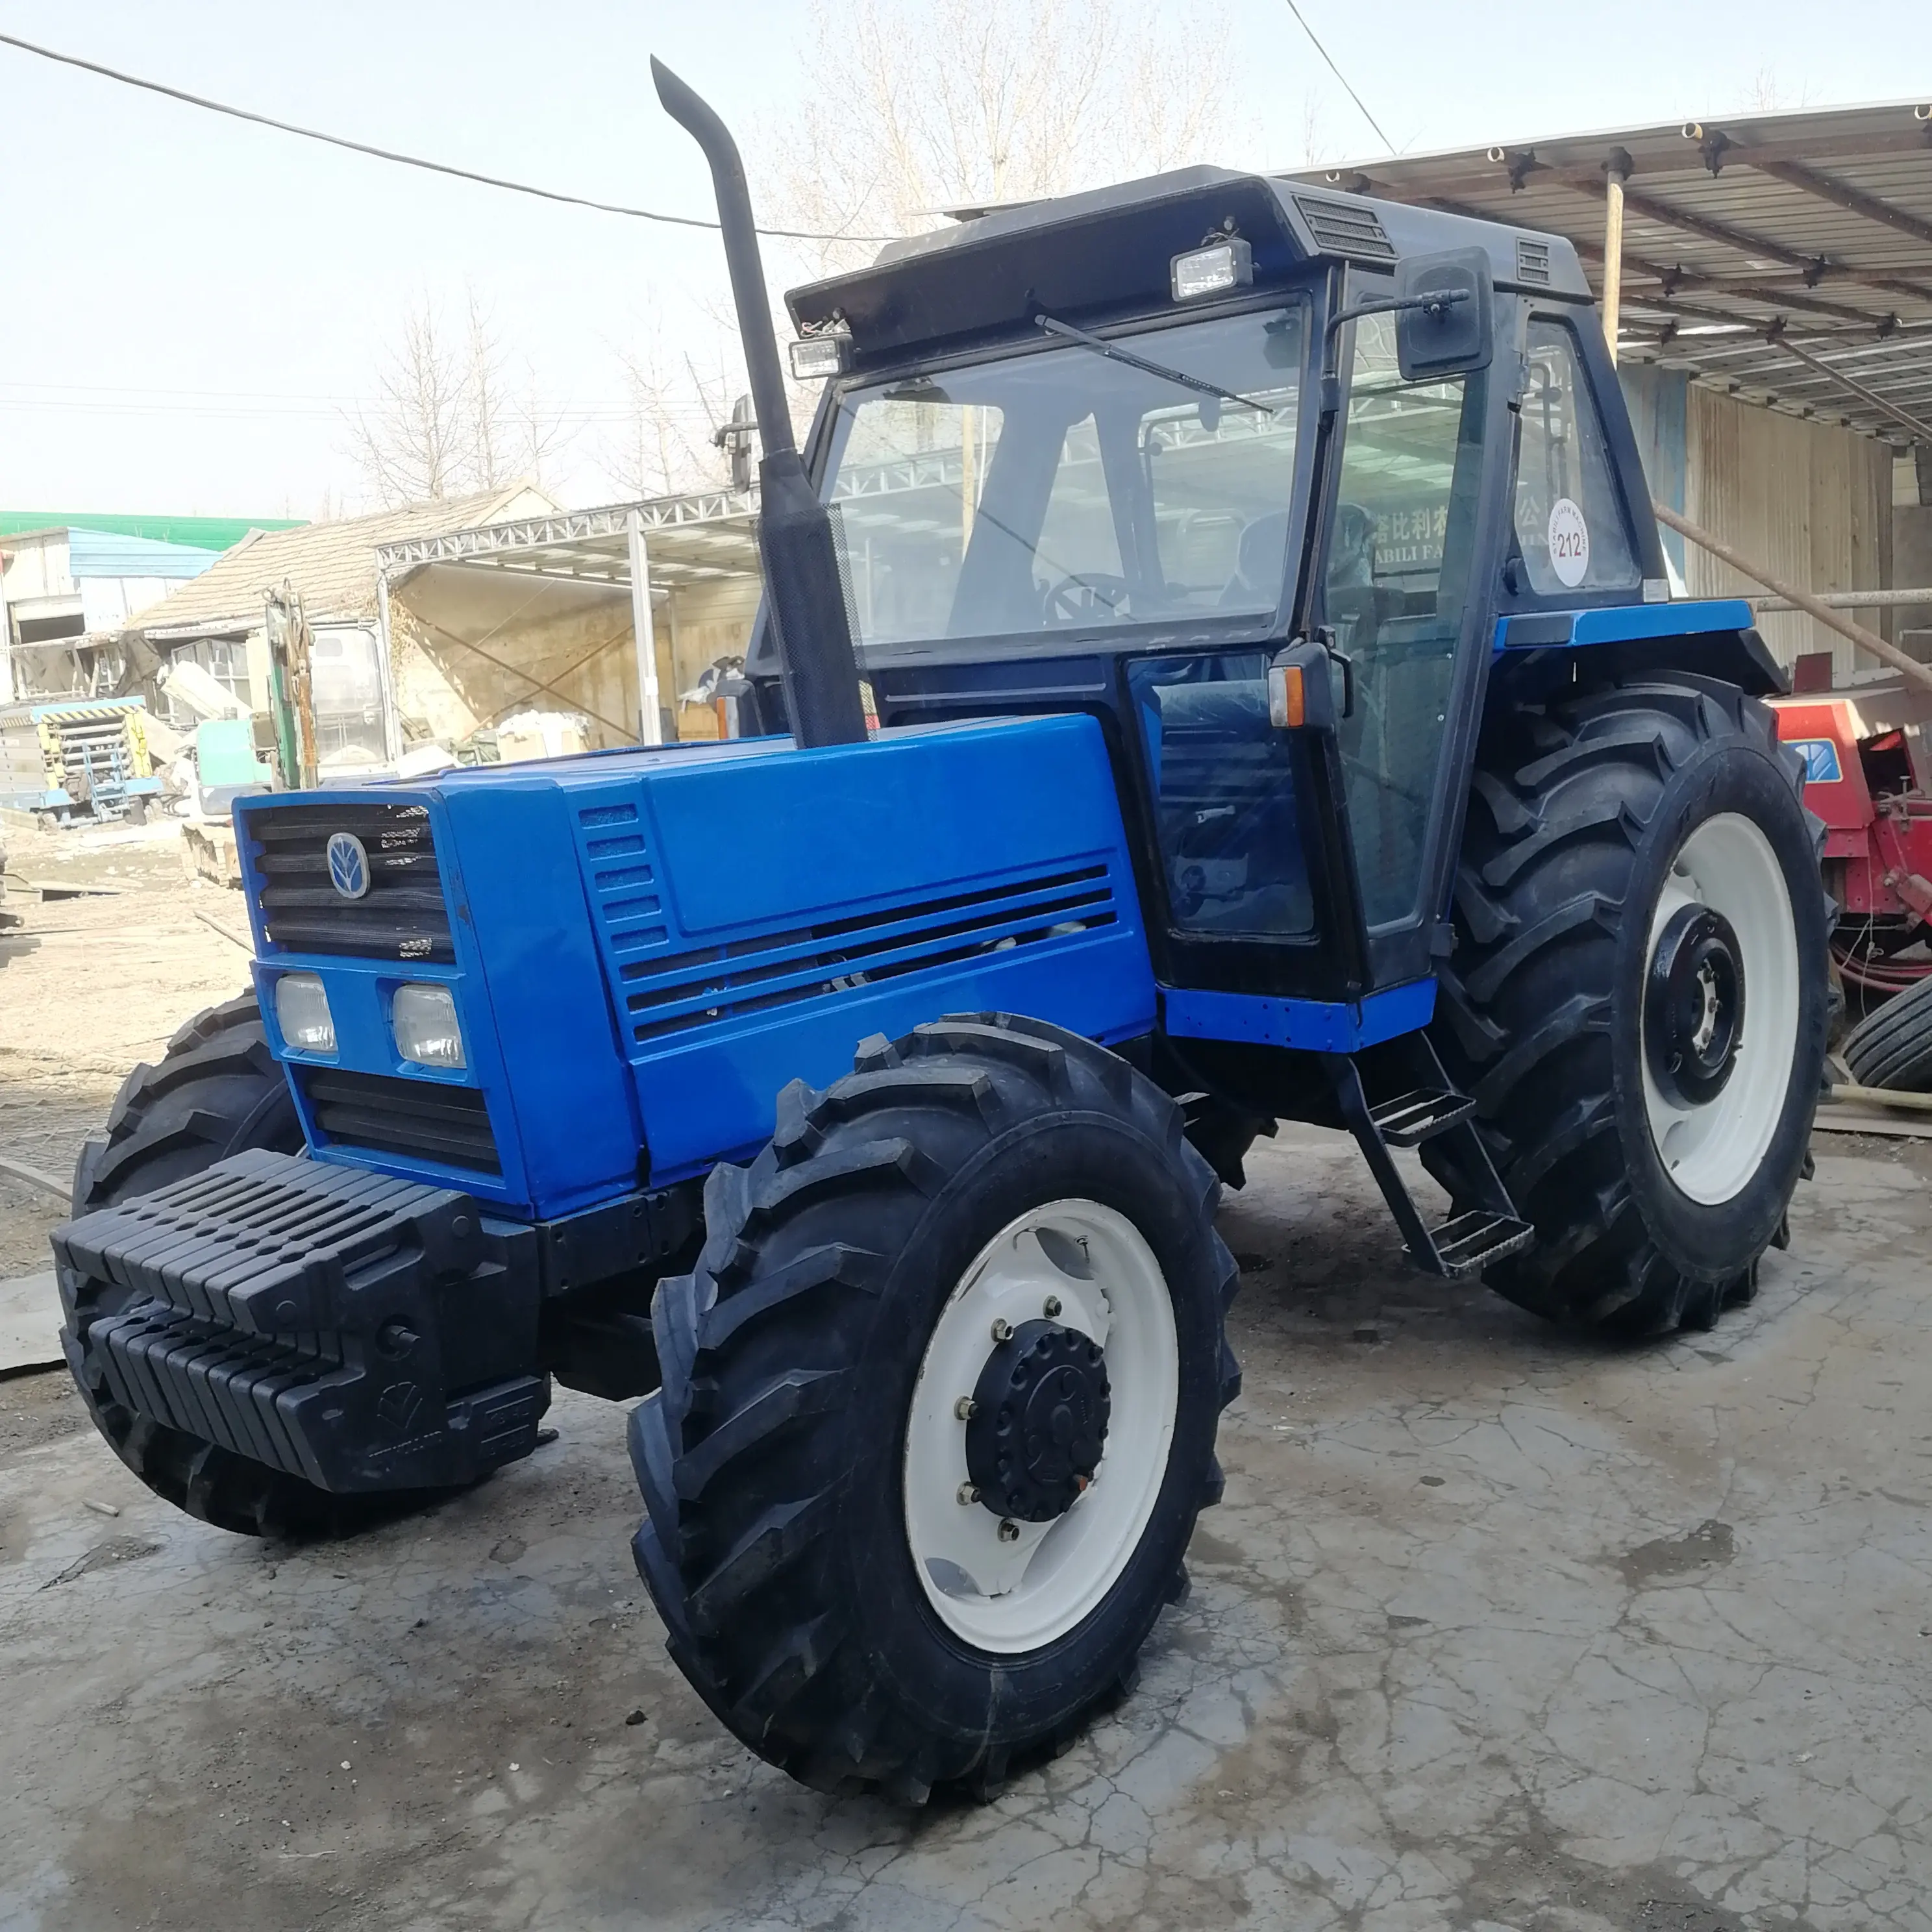 gebrauchte traktoren Fiat 110-90 110ps 4x4 allradantrieb landmaschinen landwirtschaftliche ausstattung frontschaufellader obstgarten bauernhof-traktor günstiger preis